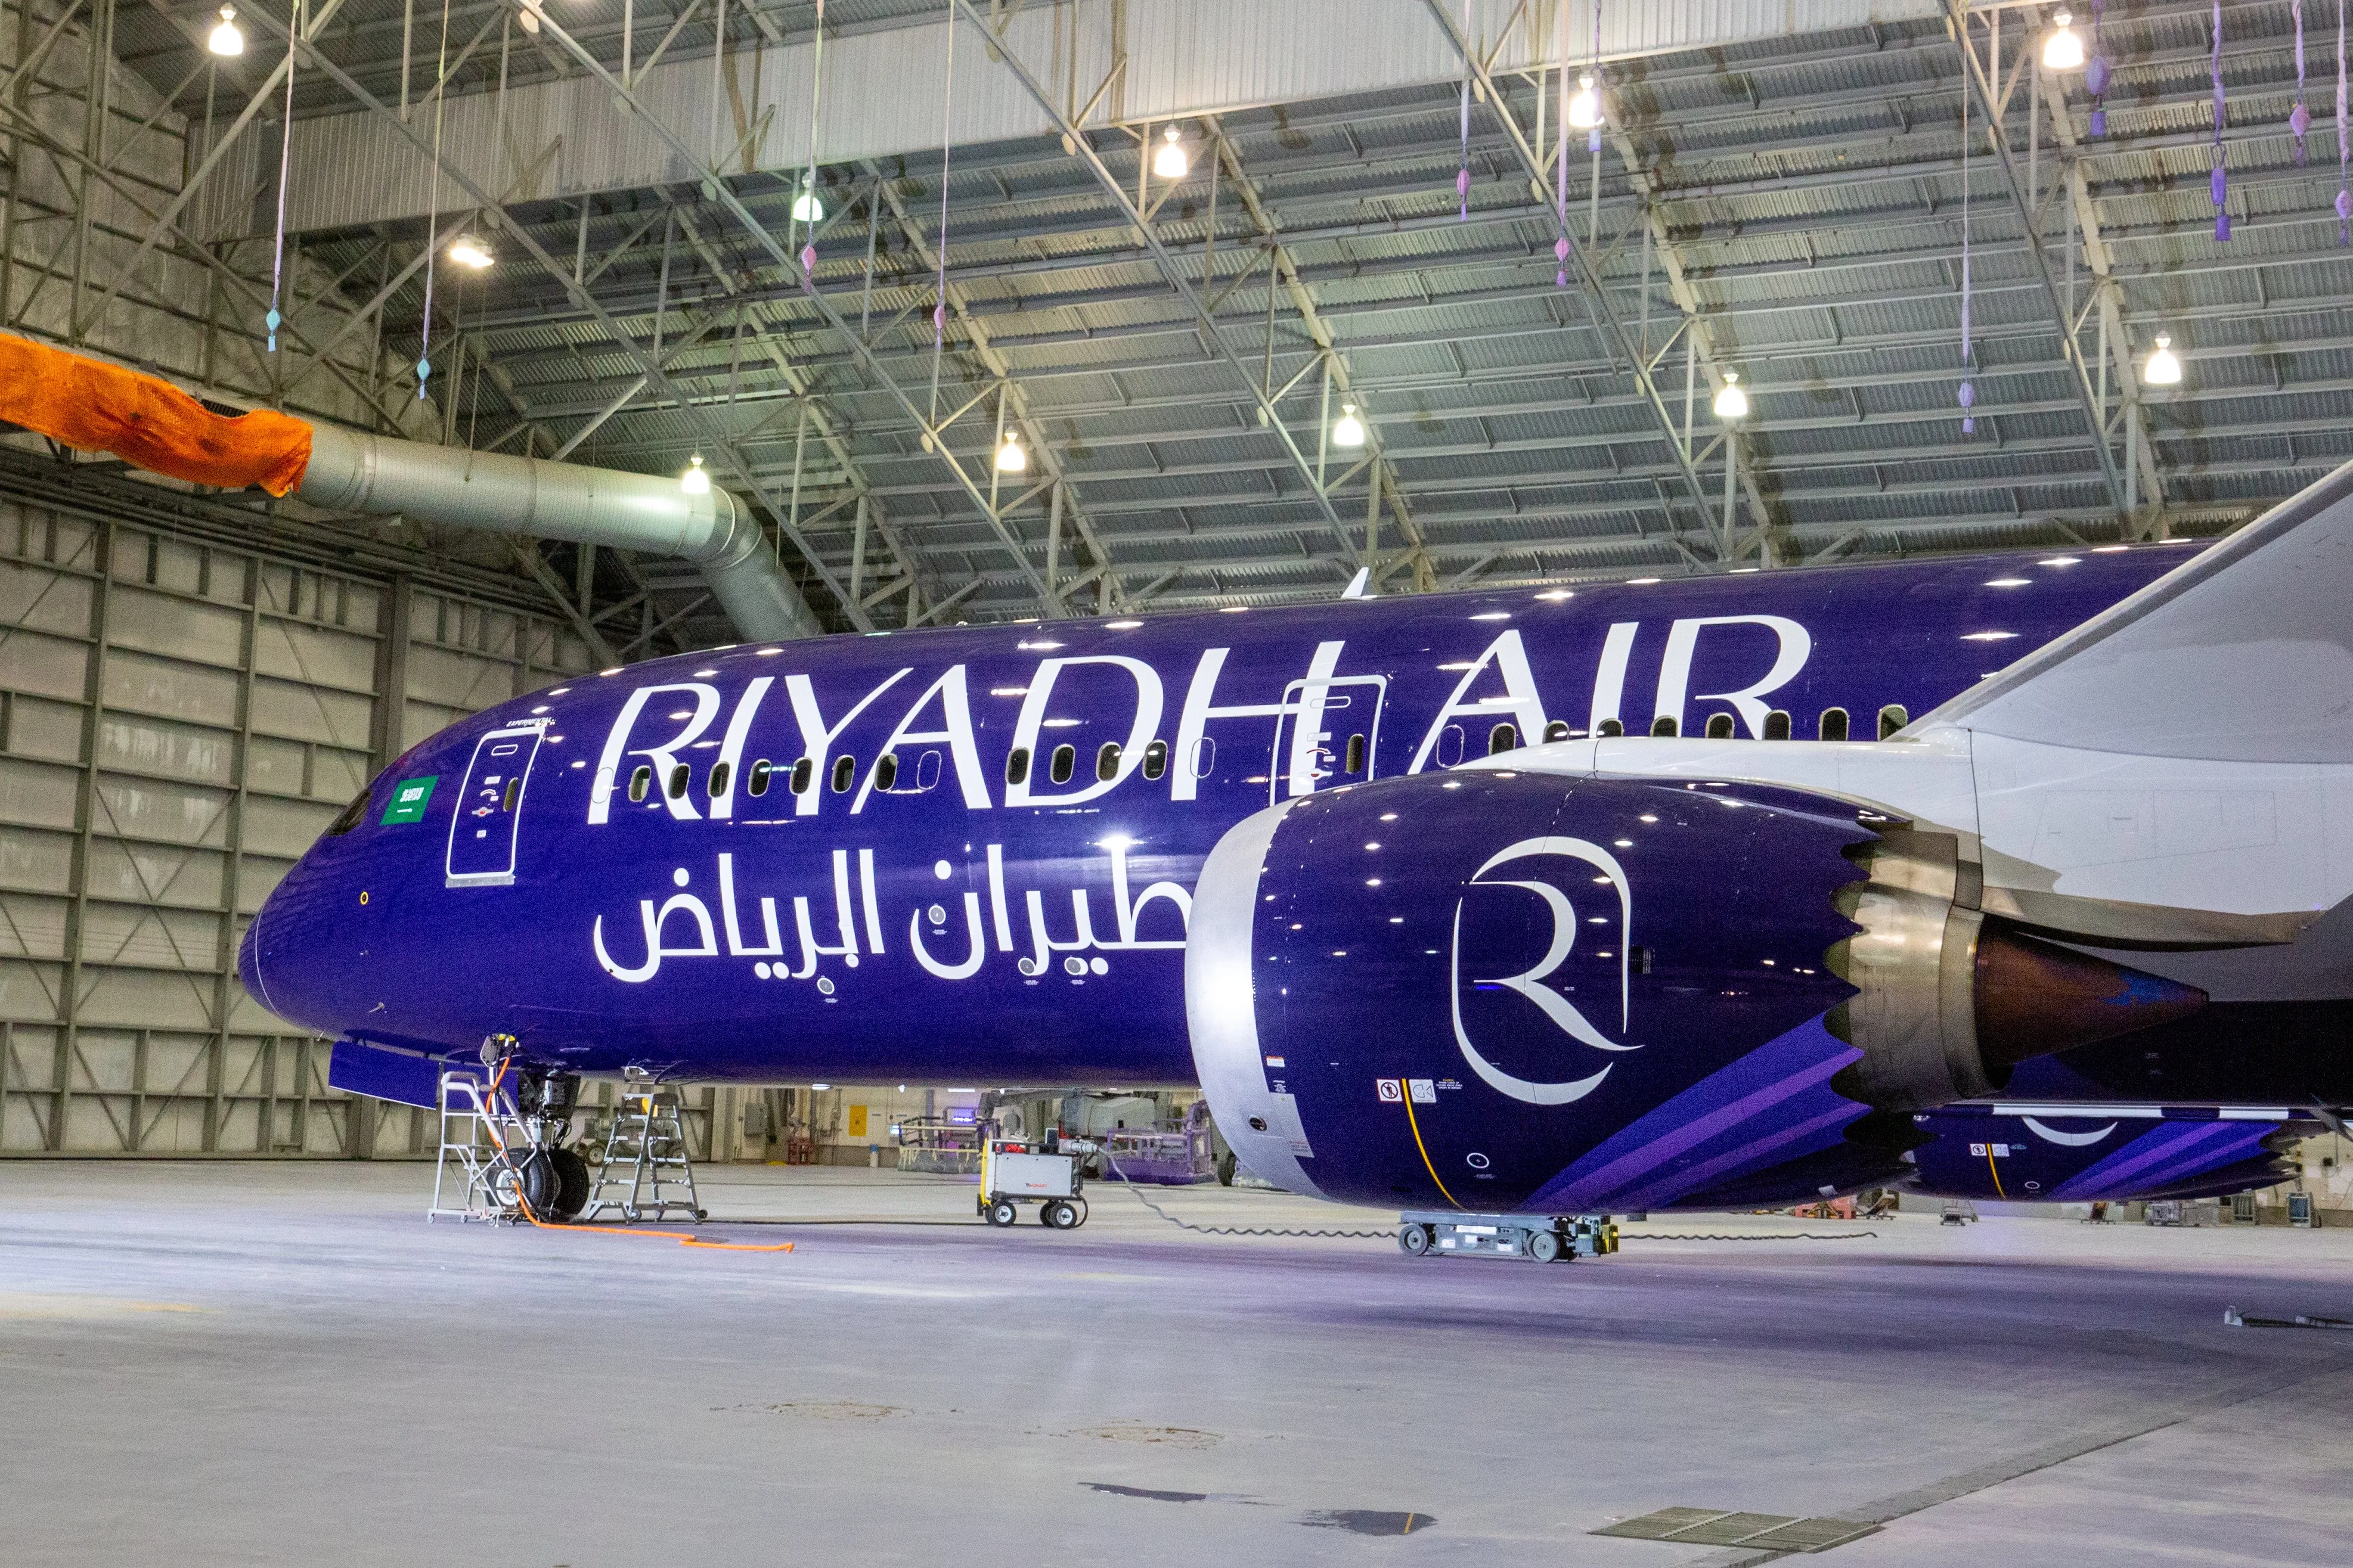 Riyadh Air new livery on its Boeing 787-9